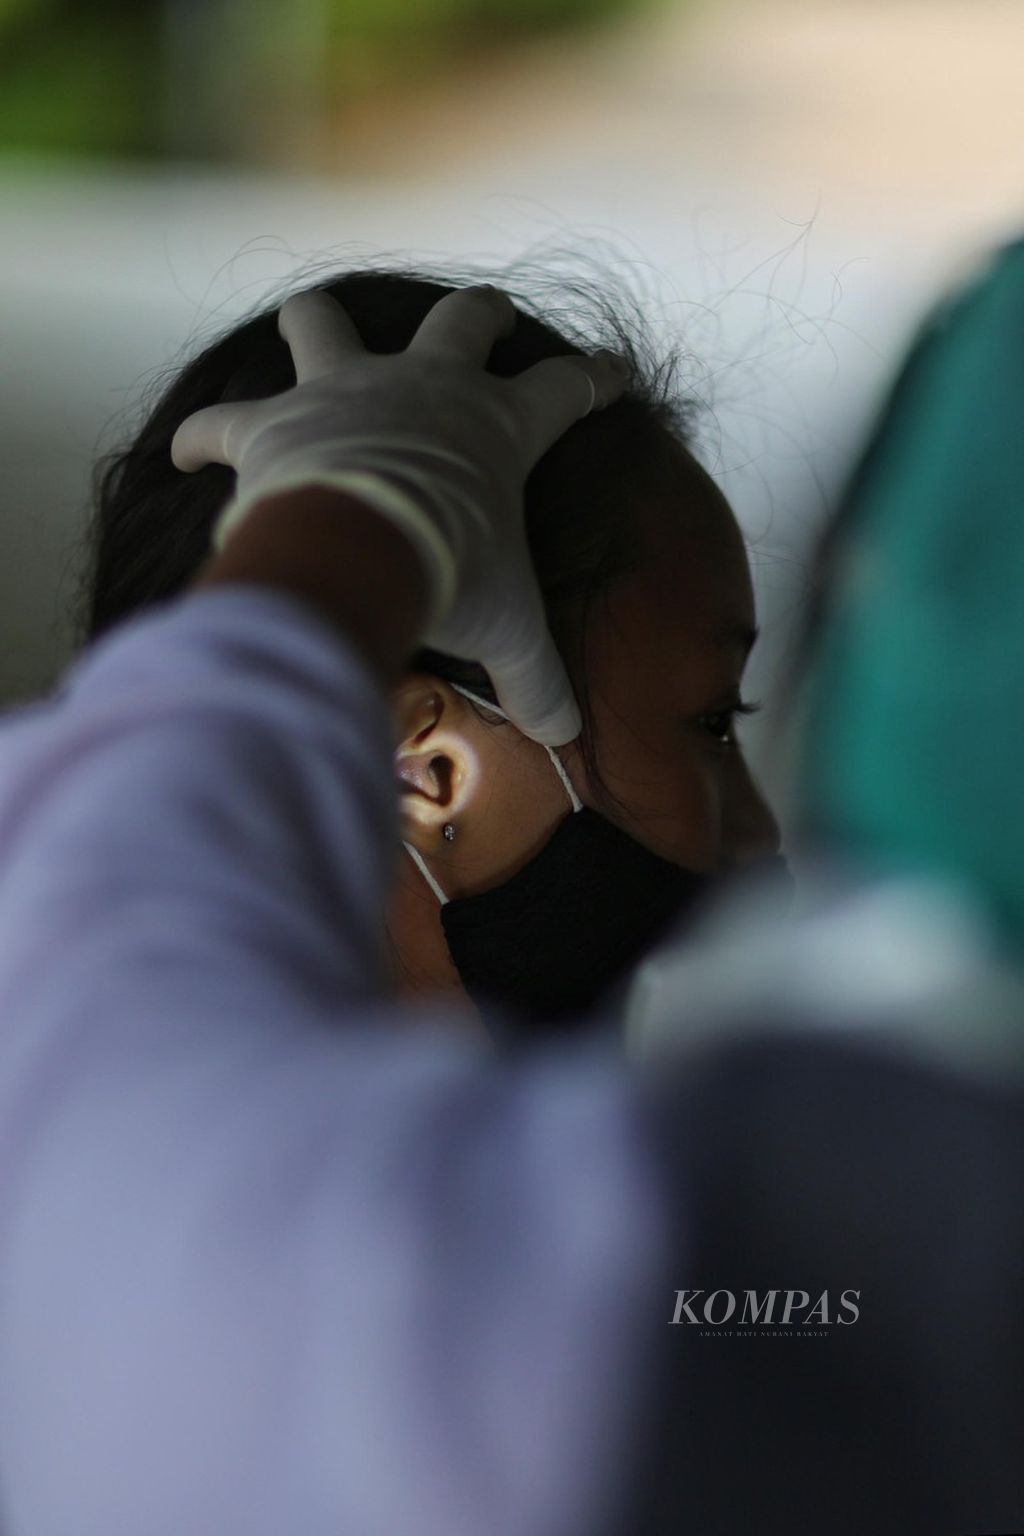 Seorang pelajar diperiksa kebersihan telinganya saat mengikuti imunisasi diphteria tetanus (Dt) yang diadakan oleh Puskesmas Rawa Bunga, Jatinegara, Jakarta Timur, Rabu (29/9/2021). Kegiatan ini diadakan dalam rangka bulan imunisasi anak sekolah. Imunisasi Dt diberikan untuk mencegah beberapa penyakit infeksi seperti difteri, tetanus, dan batuk rejan. Selain imunisasi, para pelajar juga diperiksa kesehatan dan kebersihan telinga, mulut, mata, serta diberikan obat cacing.